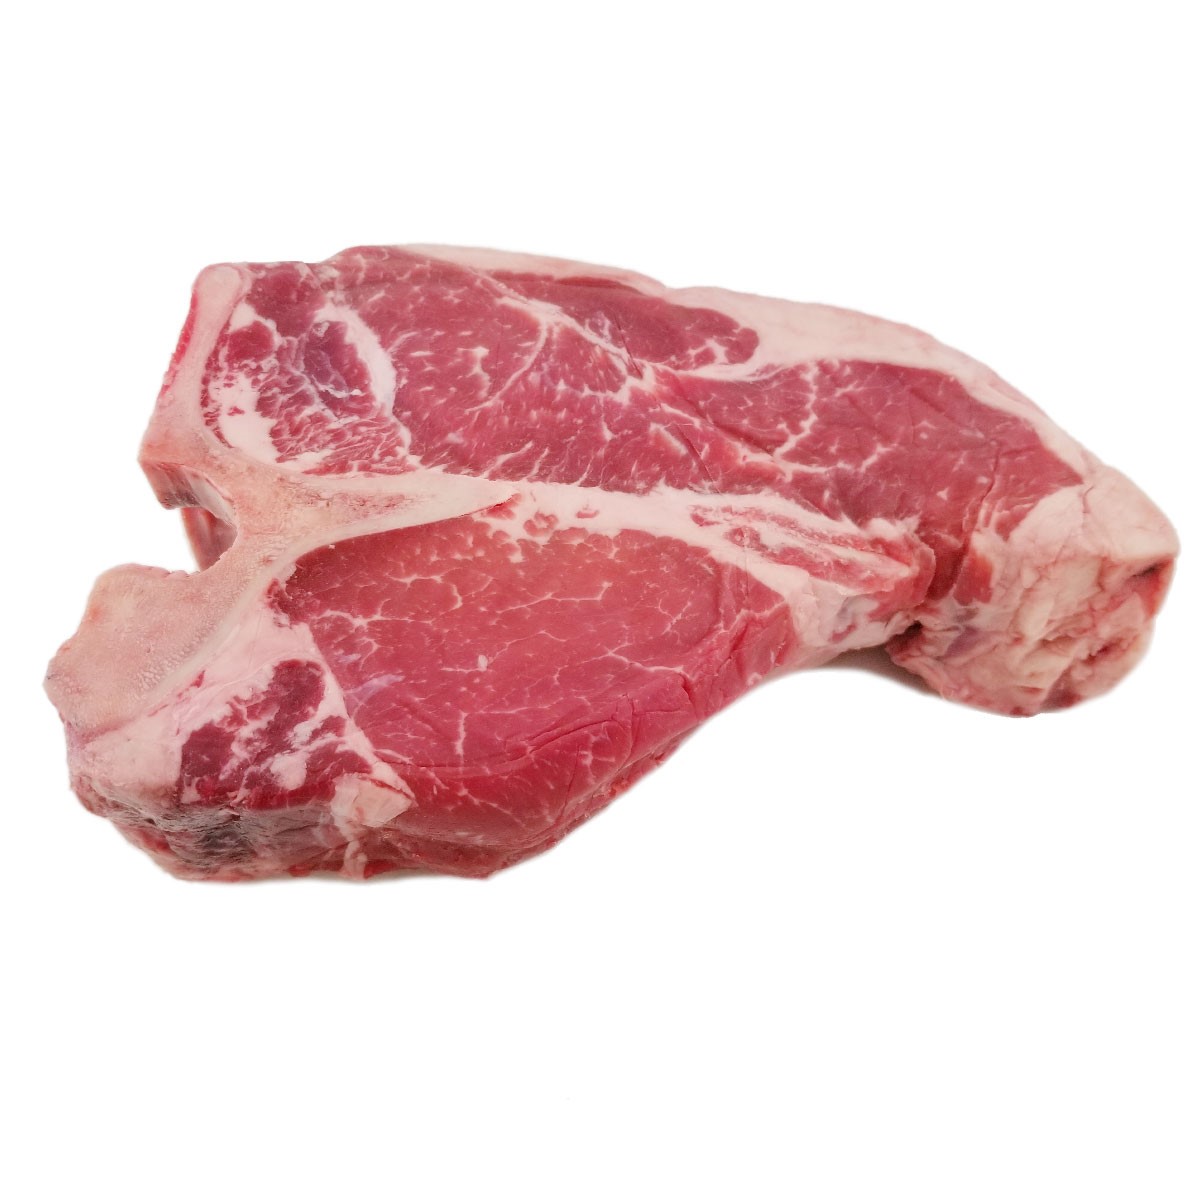 Frozen H.G. Walter Scottish Dry Aged (45 days) T-Bone Steak